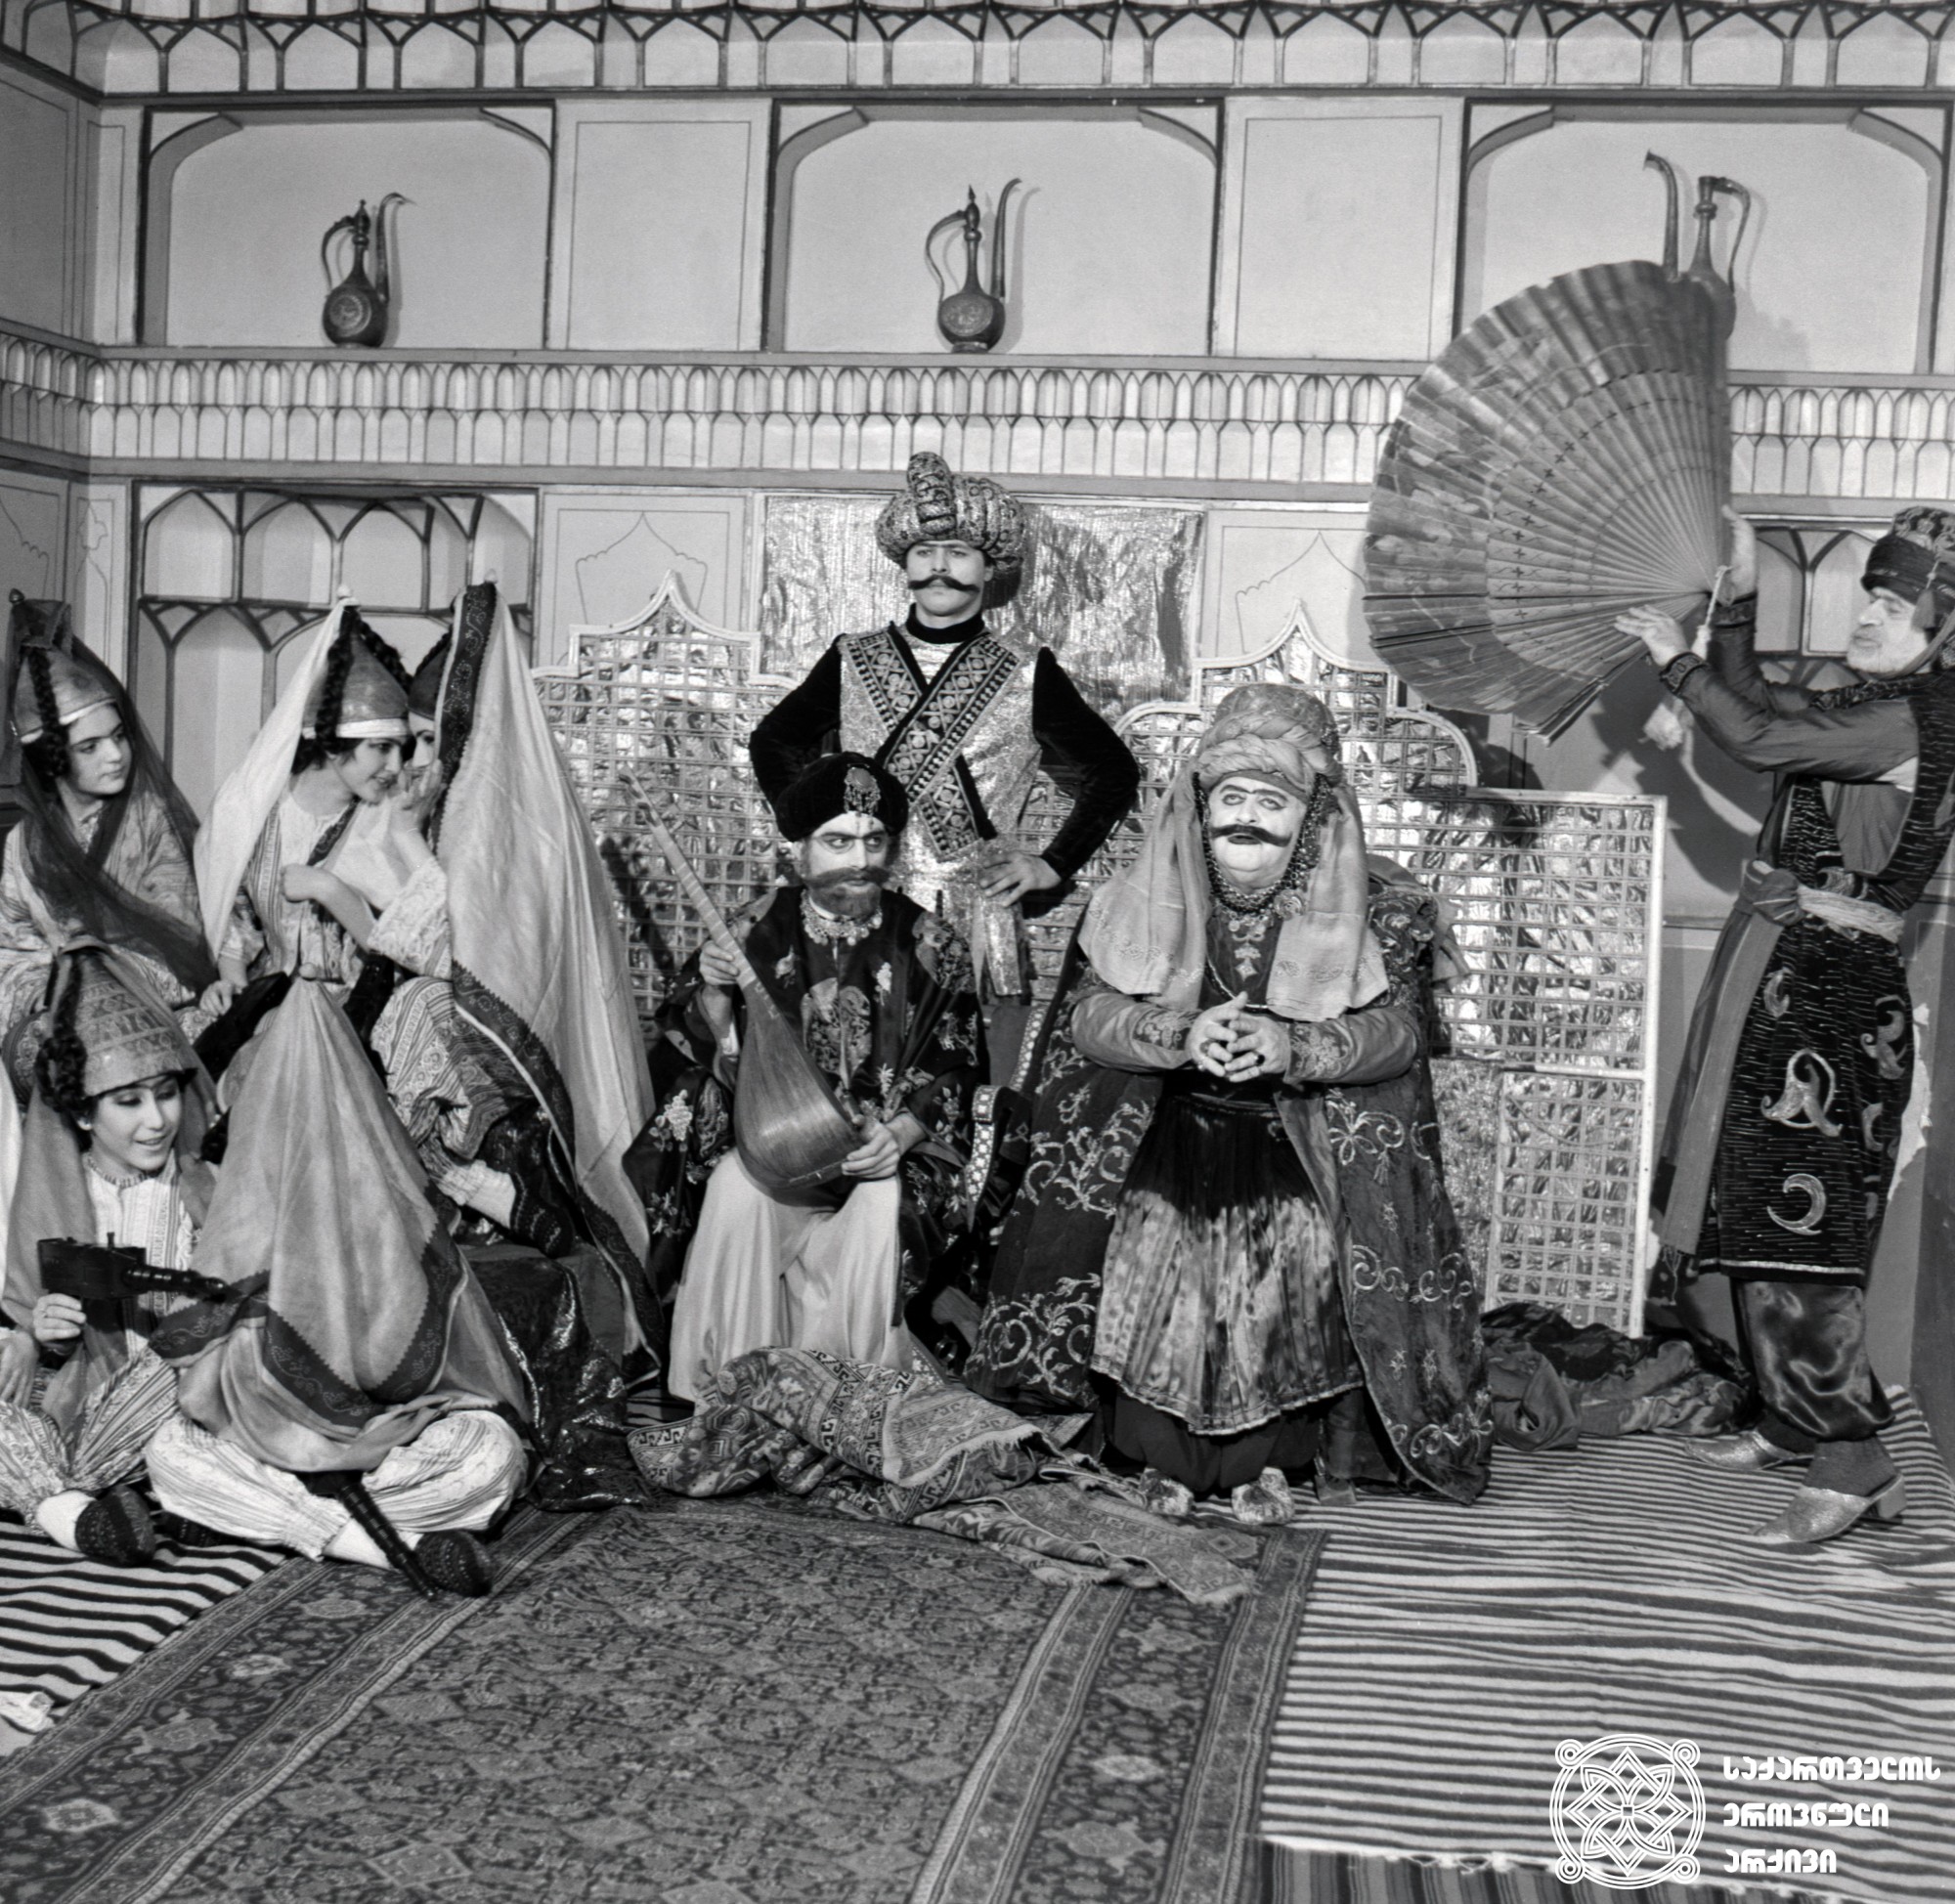 მხატვრული ფილმი „აშუღი ქერიბი“, ალი აღა - რამაზ  ჩხიკვაძე. <br>
1988 წელი.  <br>
Scene from the film Ashik-Kerib. Ramaz Chkhikvadze as Ali Agha. <br>
1988.